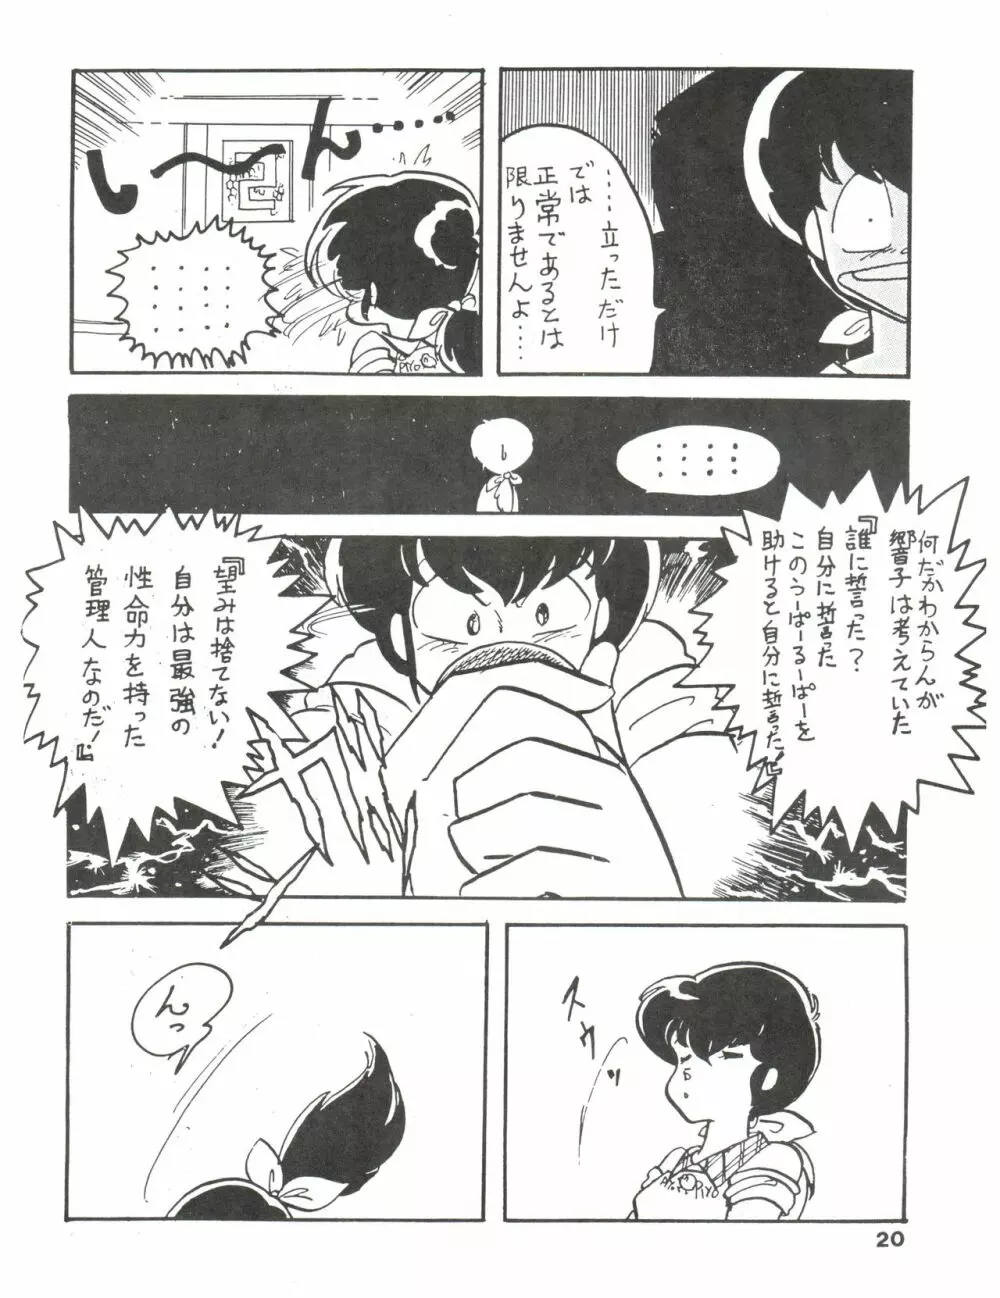 寡黙のうたげ - page20